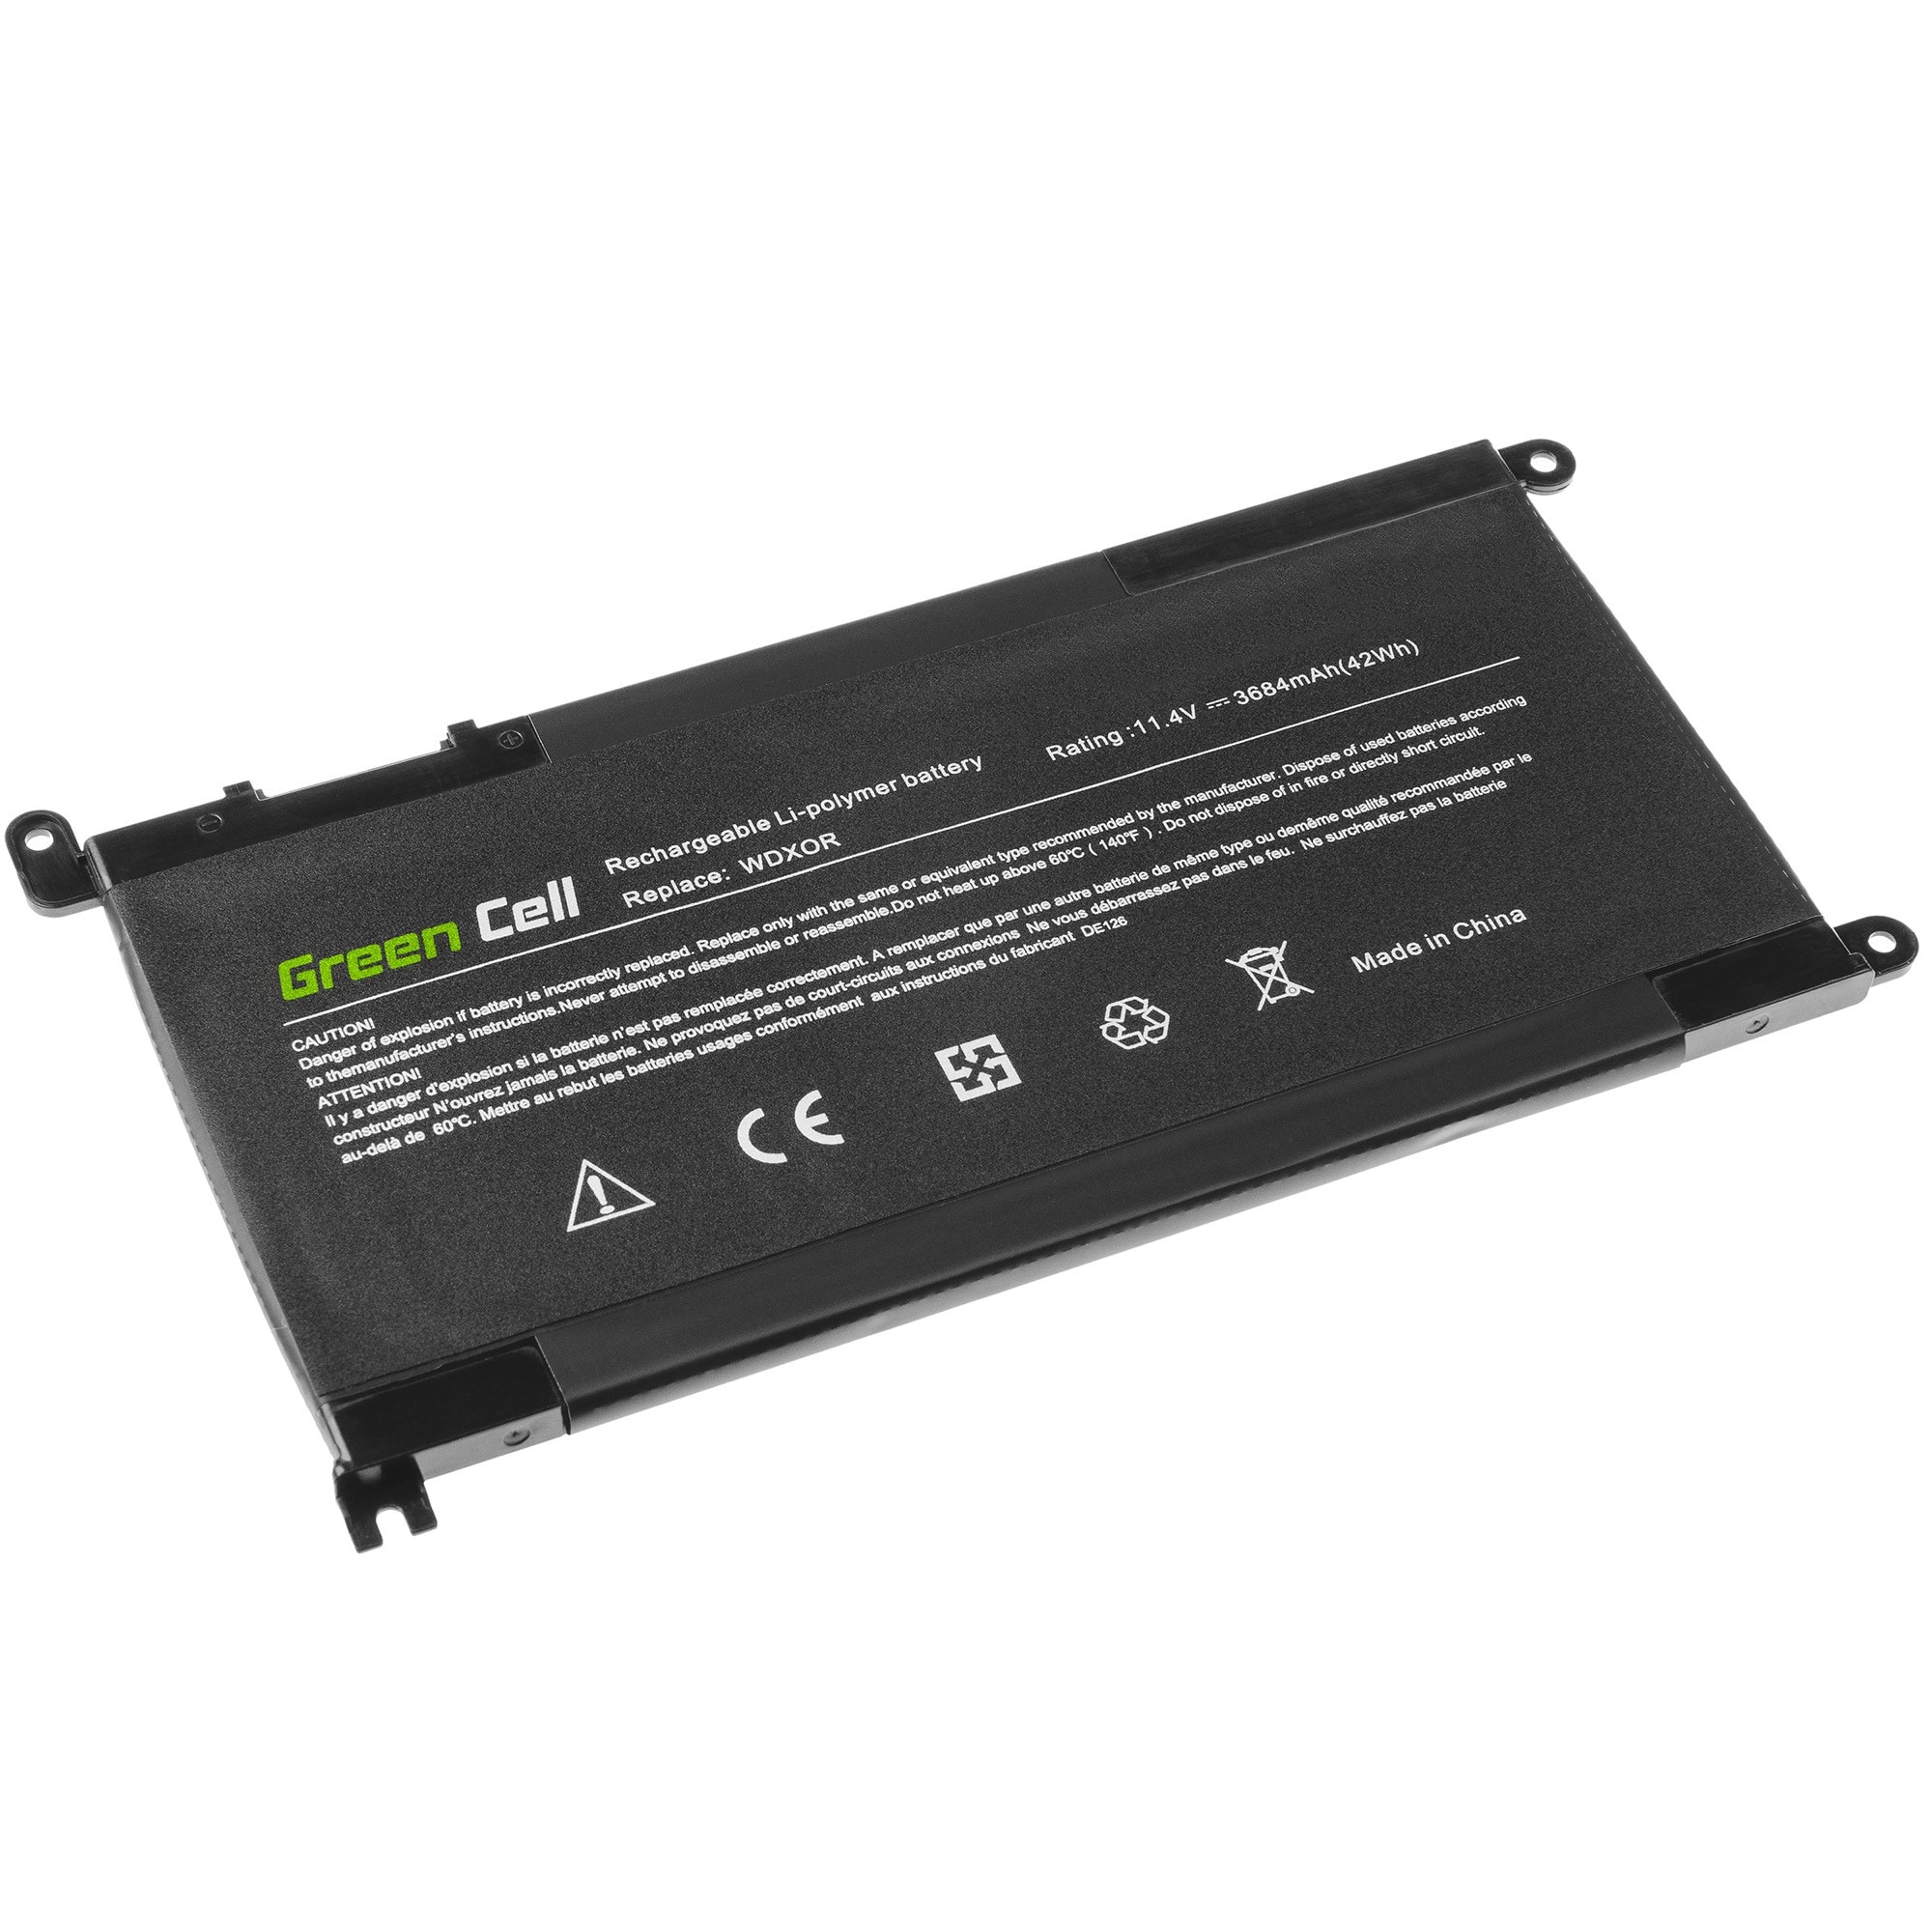 Green Cell laptopbatteri til Dell Inspiron 13 WDX0R WDXOR 5570 Vostro 14